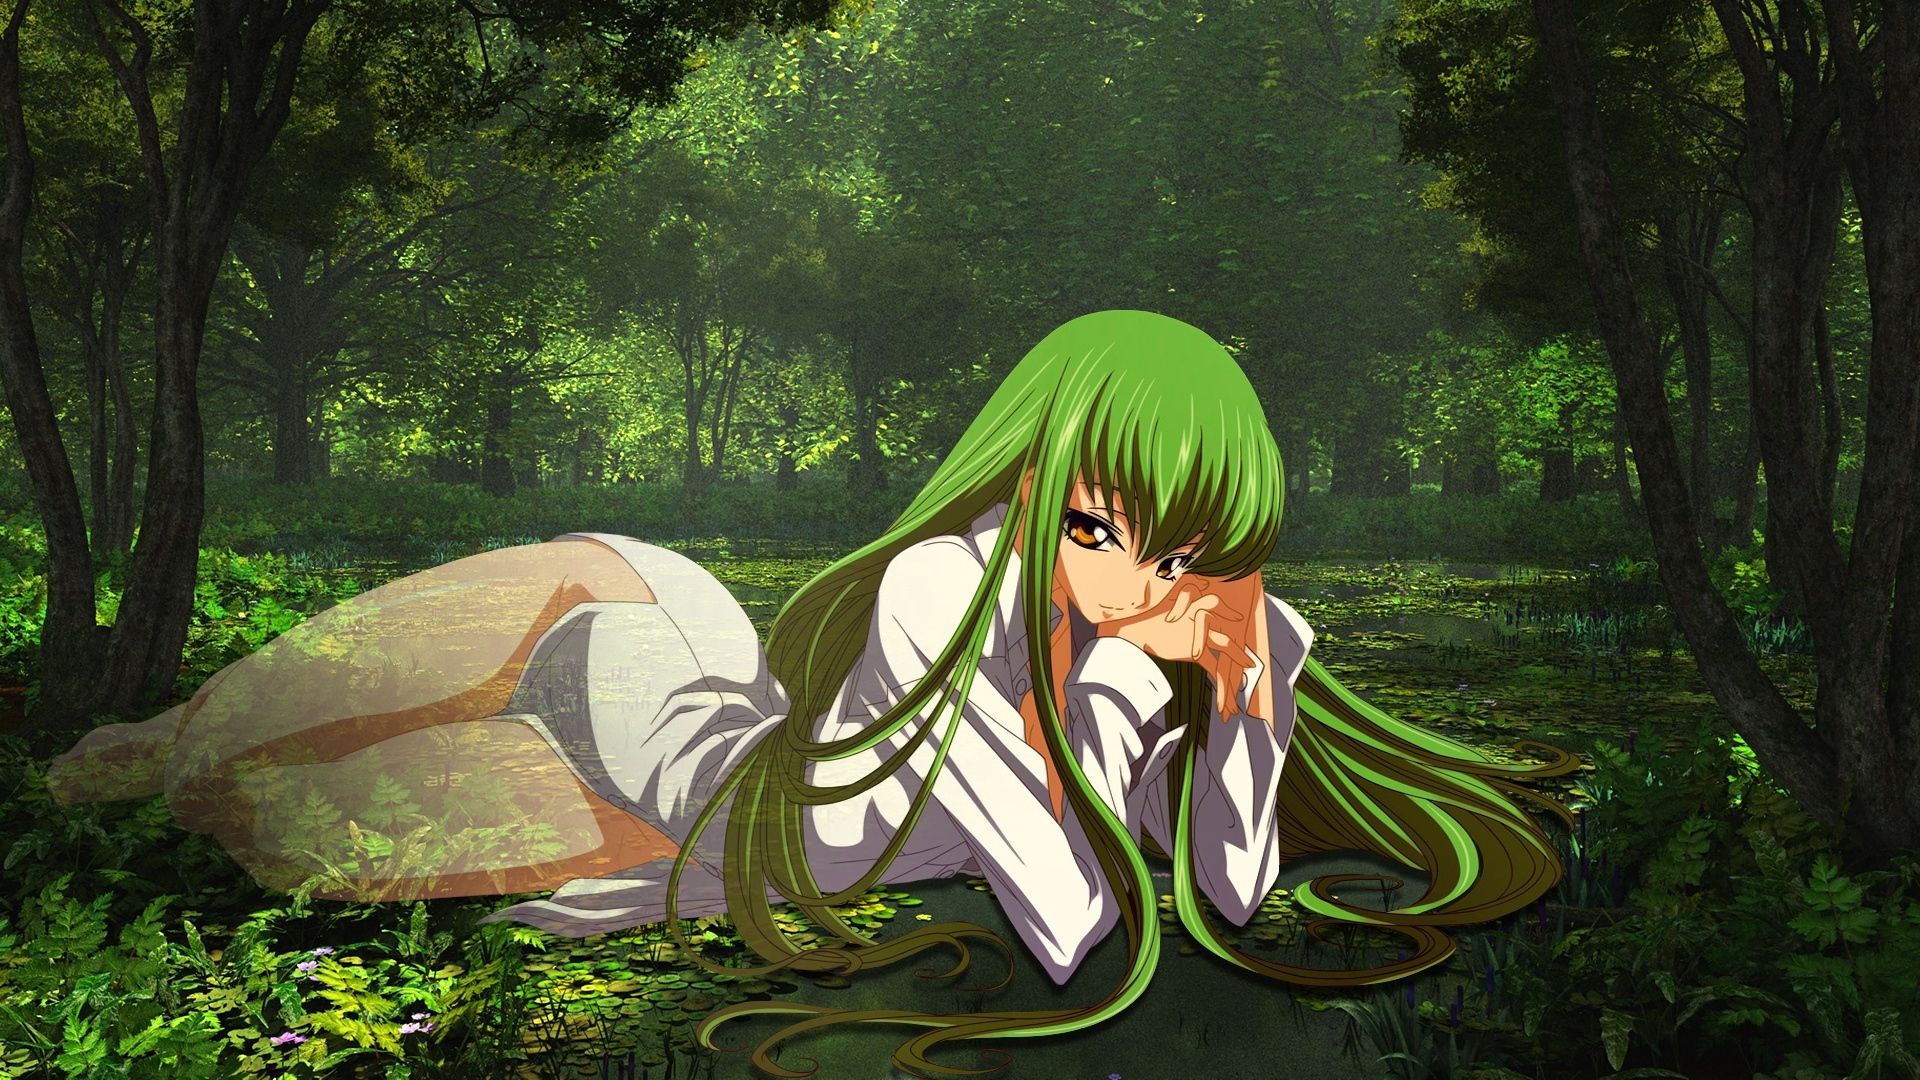 Green Anime Wallpaper. Anime Wallpaper